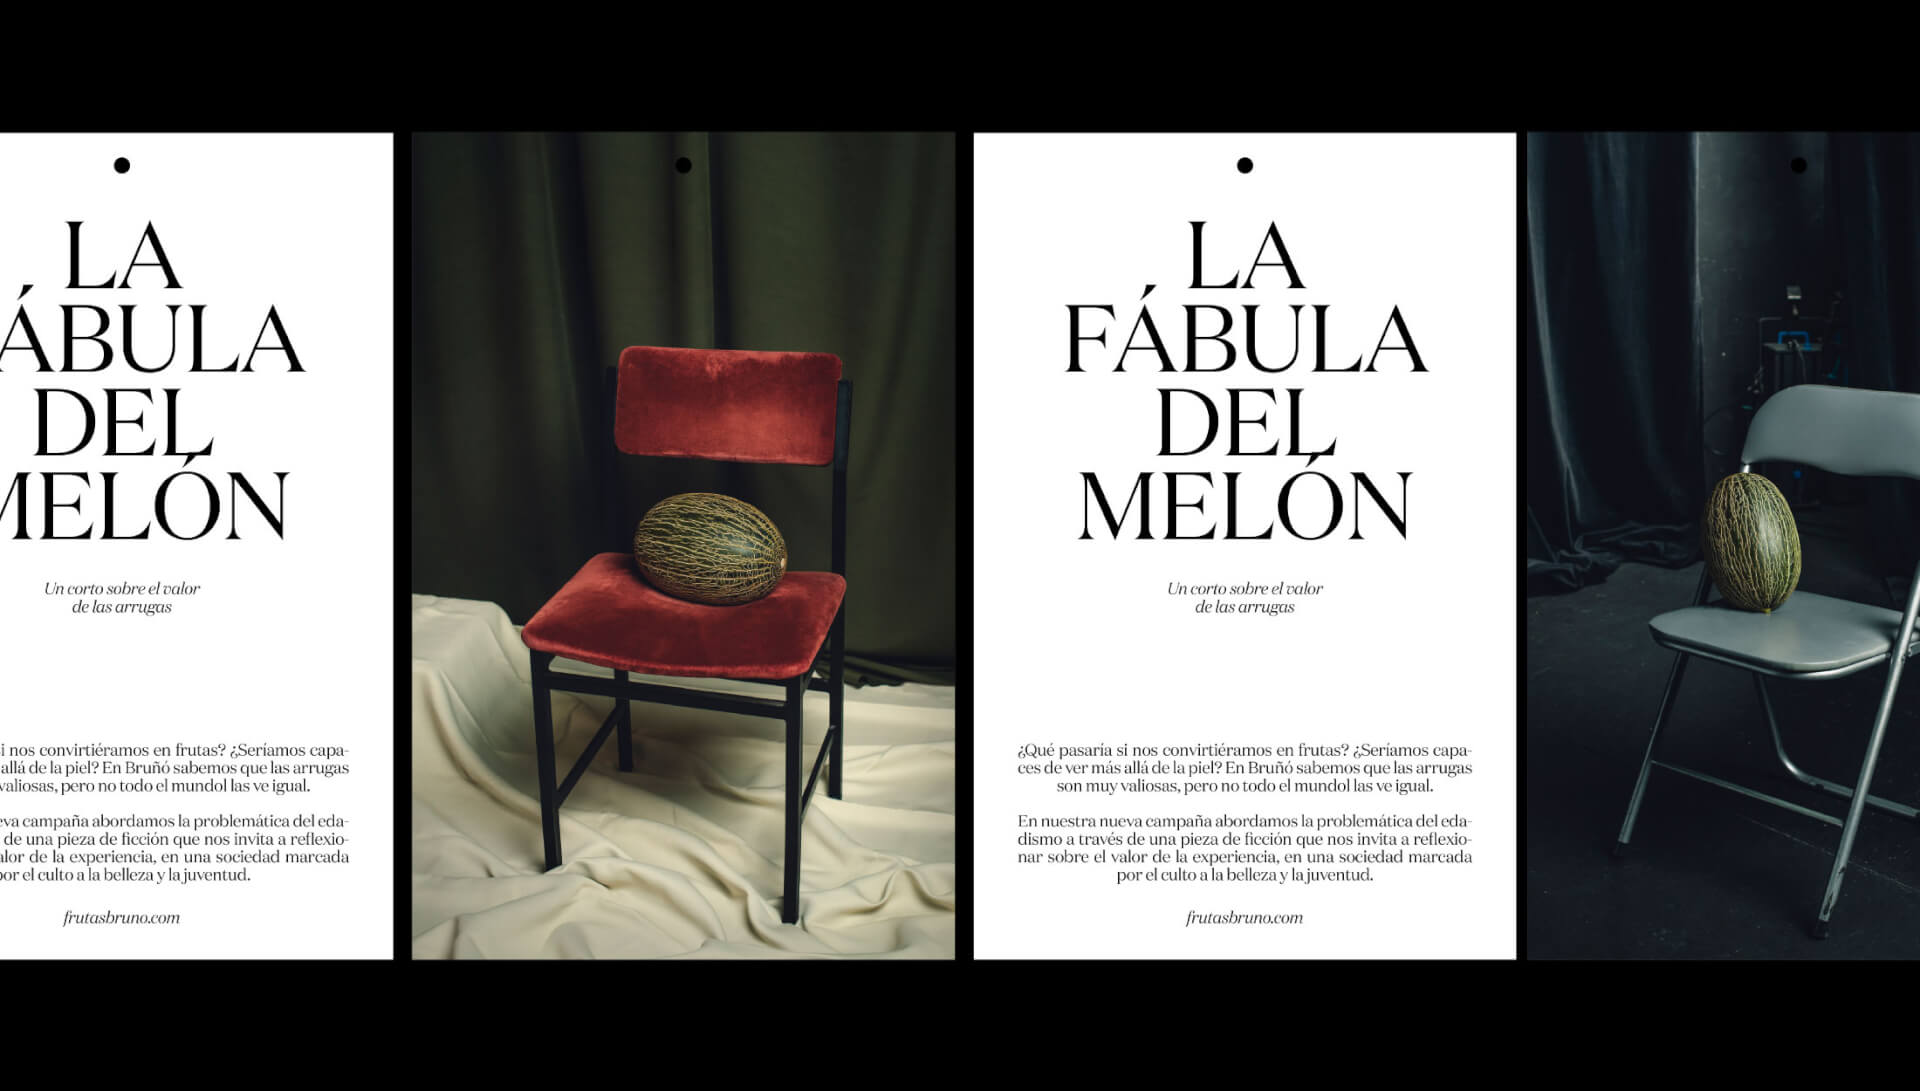 Conjunto de imágenes y textos explicativos sobre el vídeo La fábula del melón